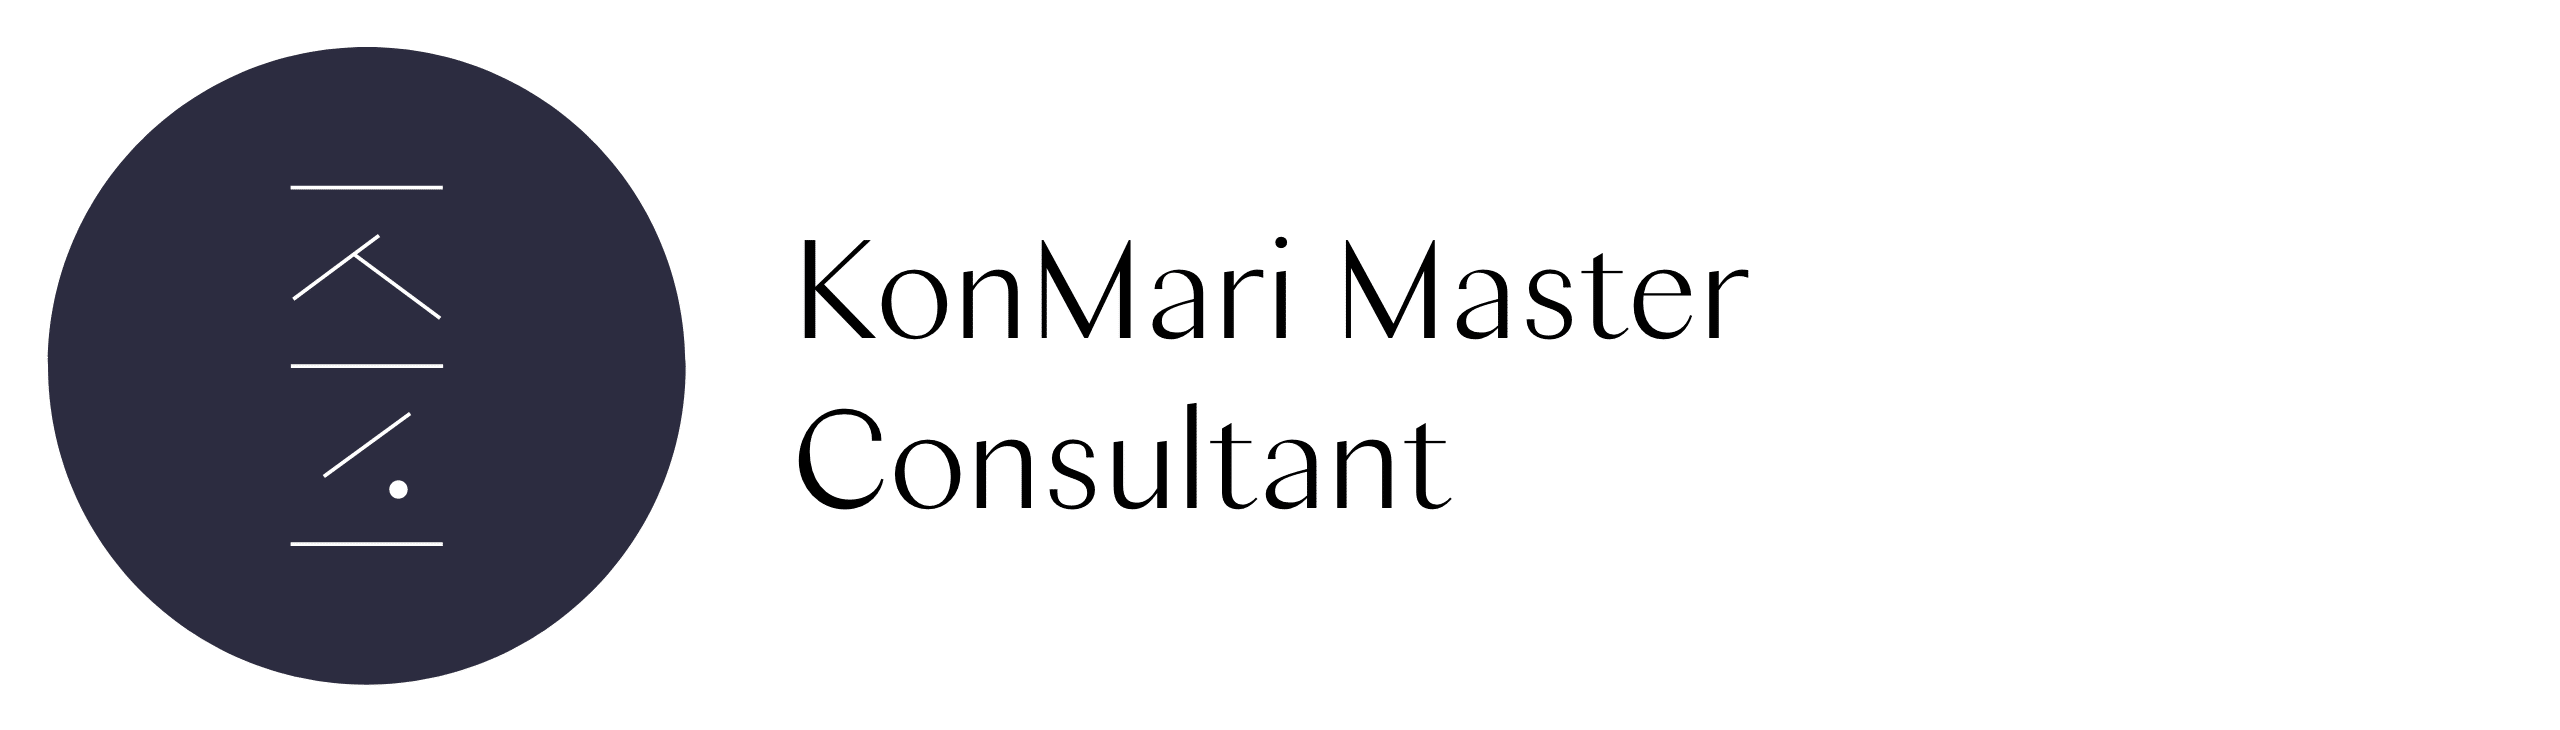 Konmari Master consultant